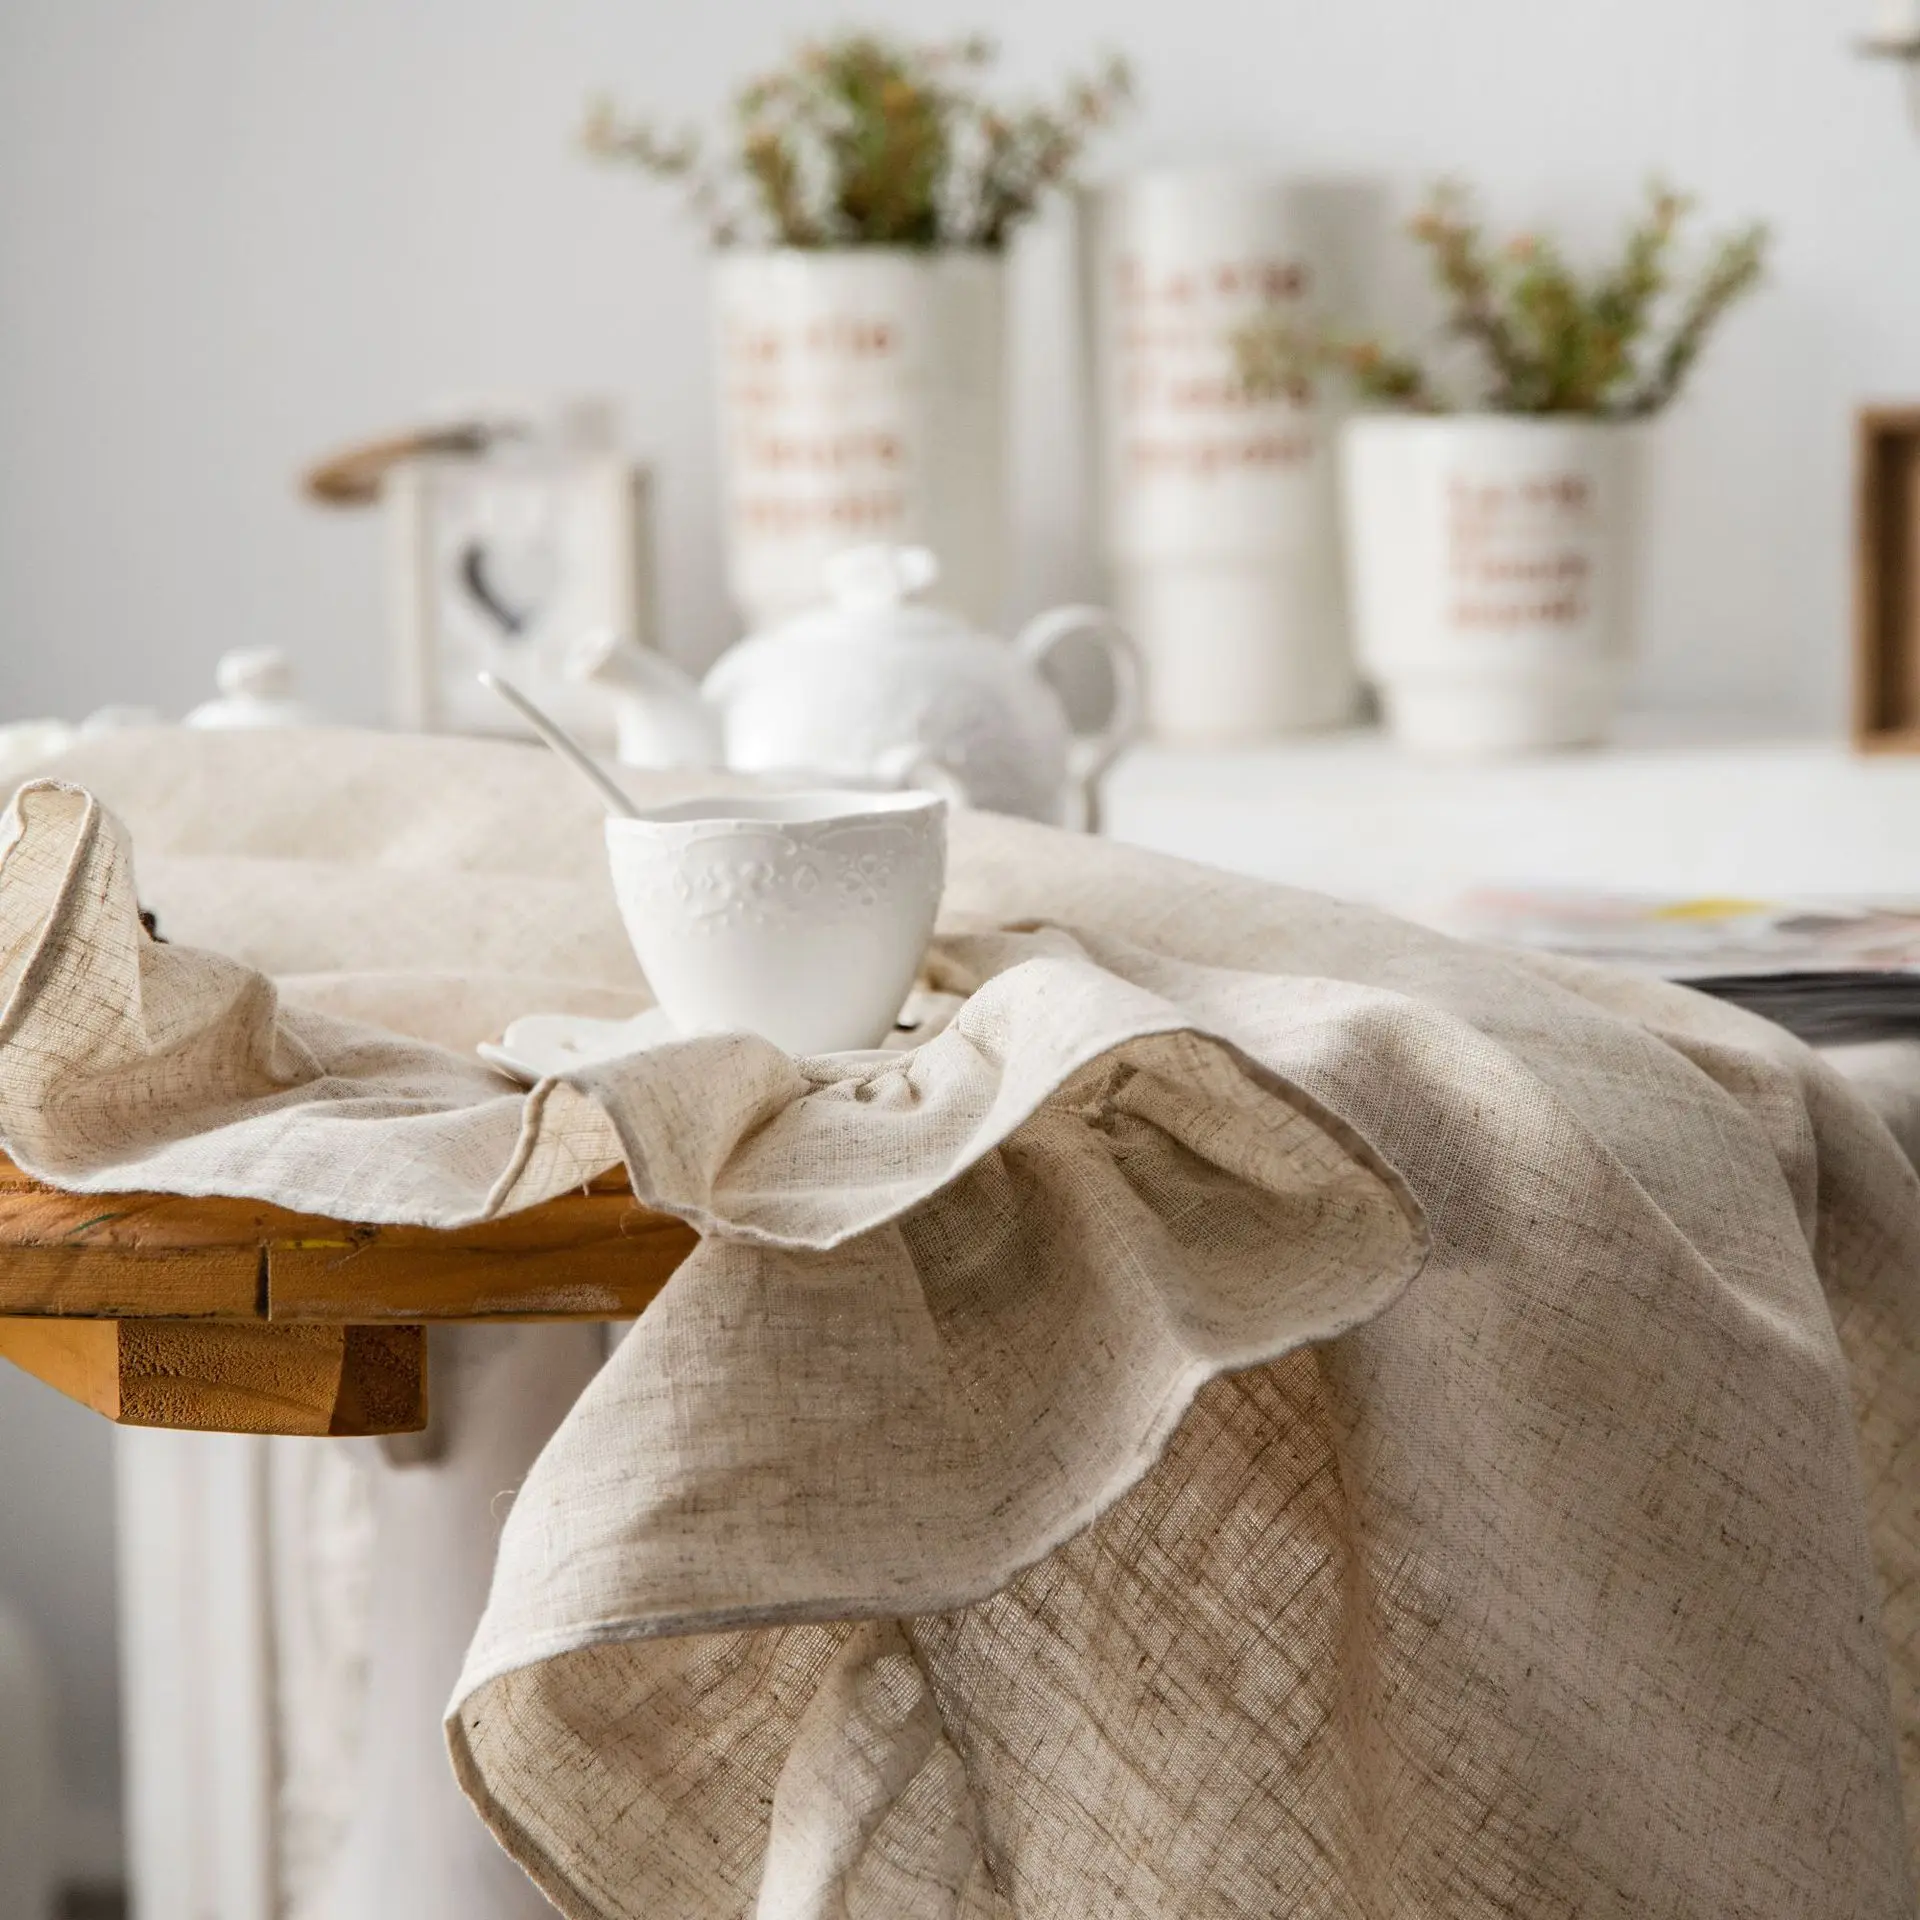 Ruffle Round Cotton Tablecloth, Cobertura de mesa lavável para férias, jantar, banquete, cozinha, decoração do casamento, guarnição